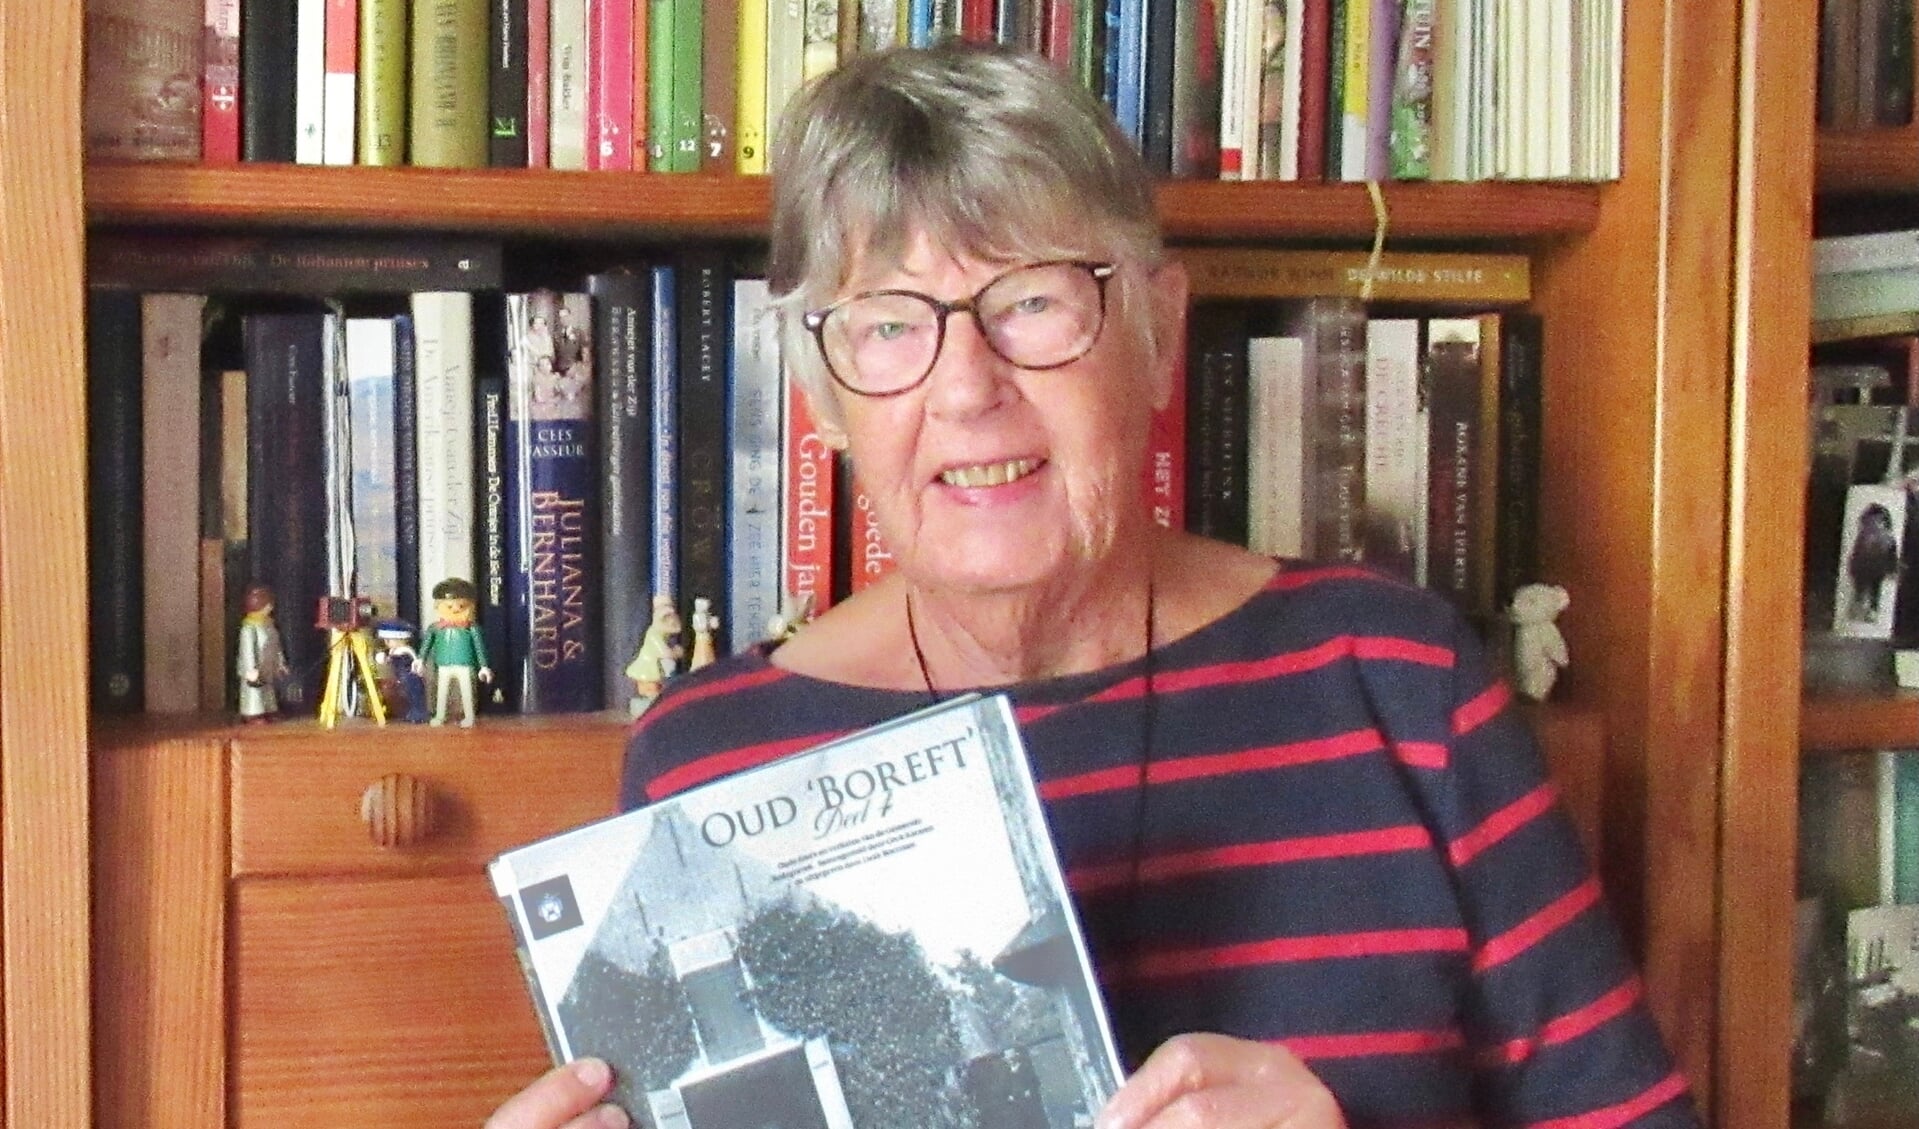 Cock Karssen met haar nieuwe boek: het vierde deel van 'Oud Boreft'. Beeld: Cock Karssen